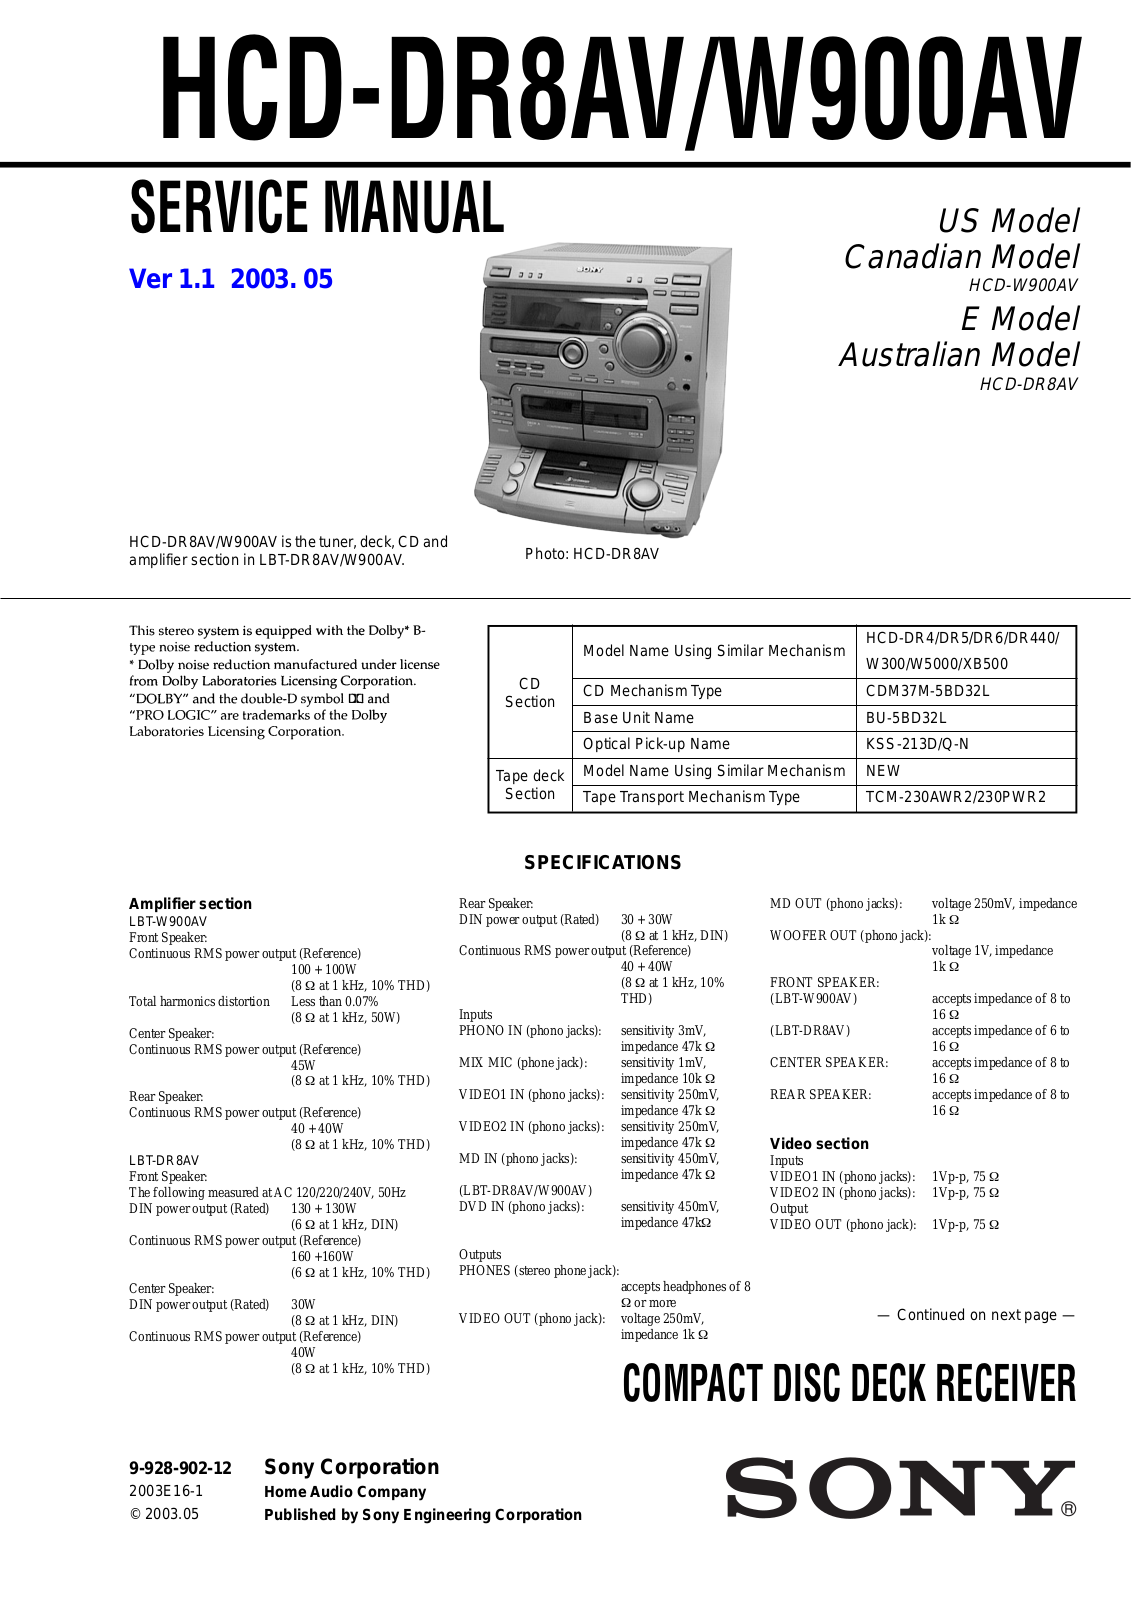 SONY HCD DR8AV, HCD W900AV Service Manual